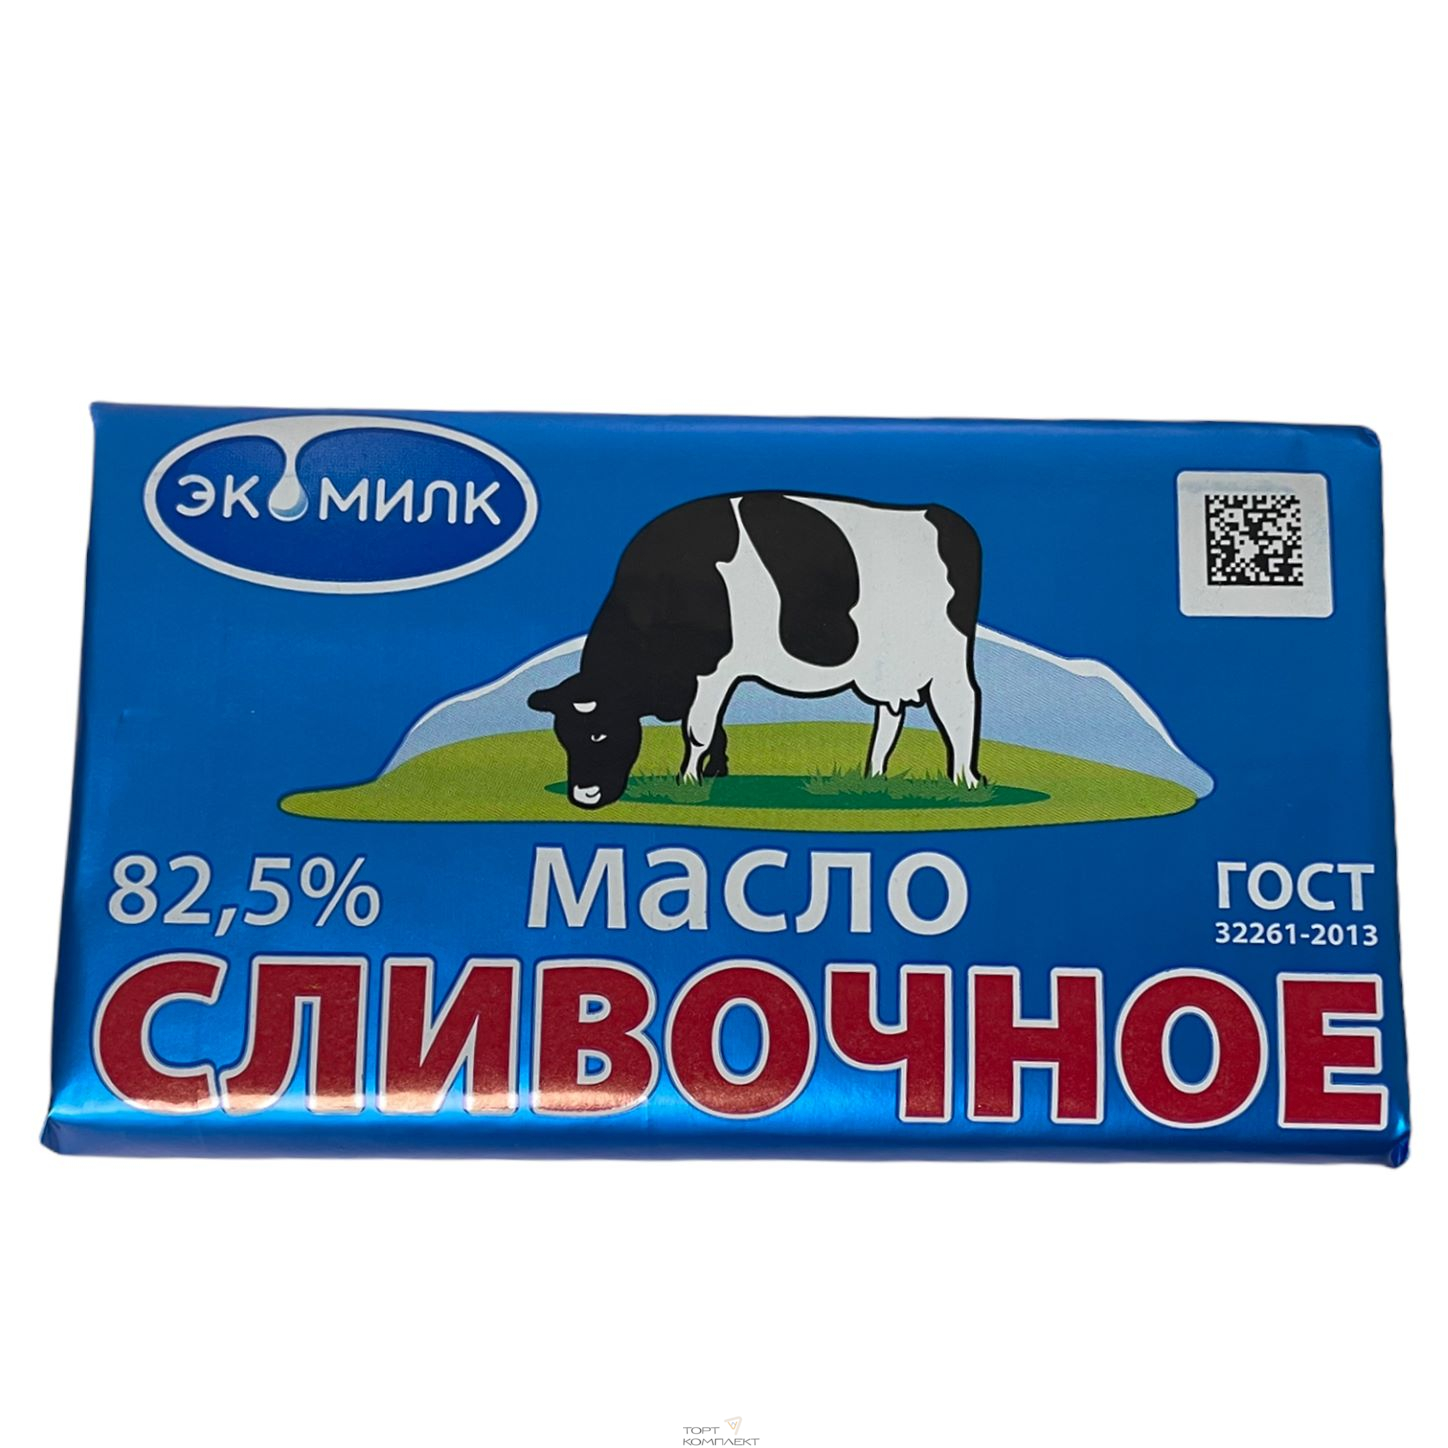 Купить Масло сливочное Экомилк 82,5% 450 гр 